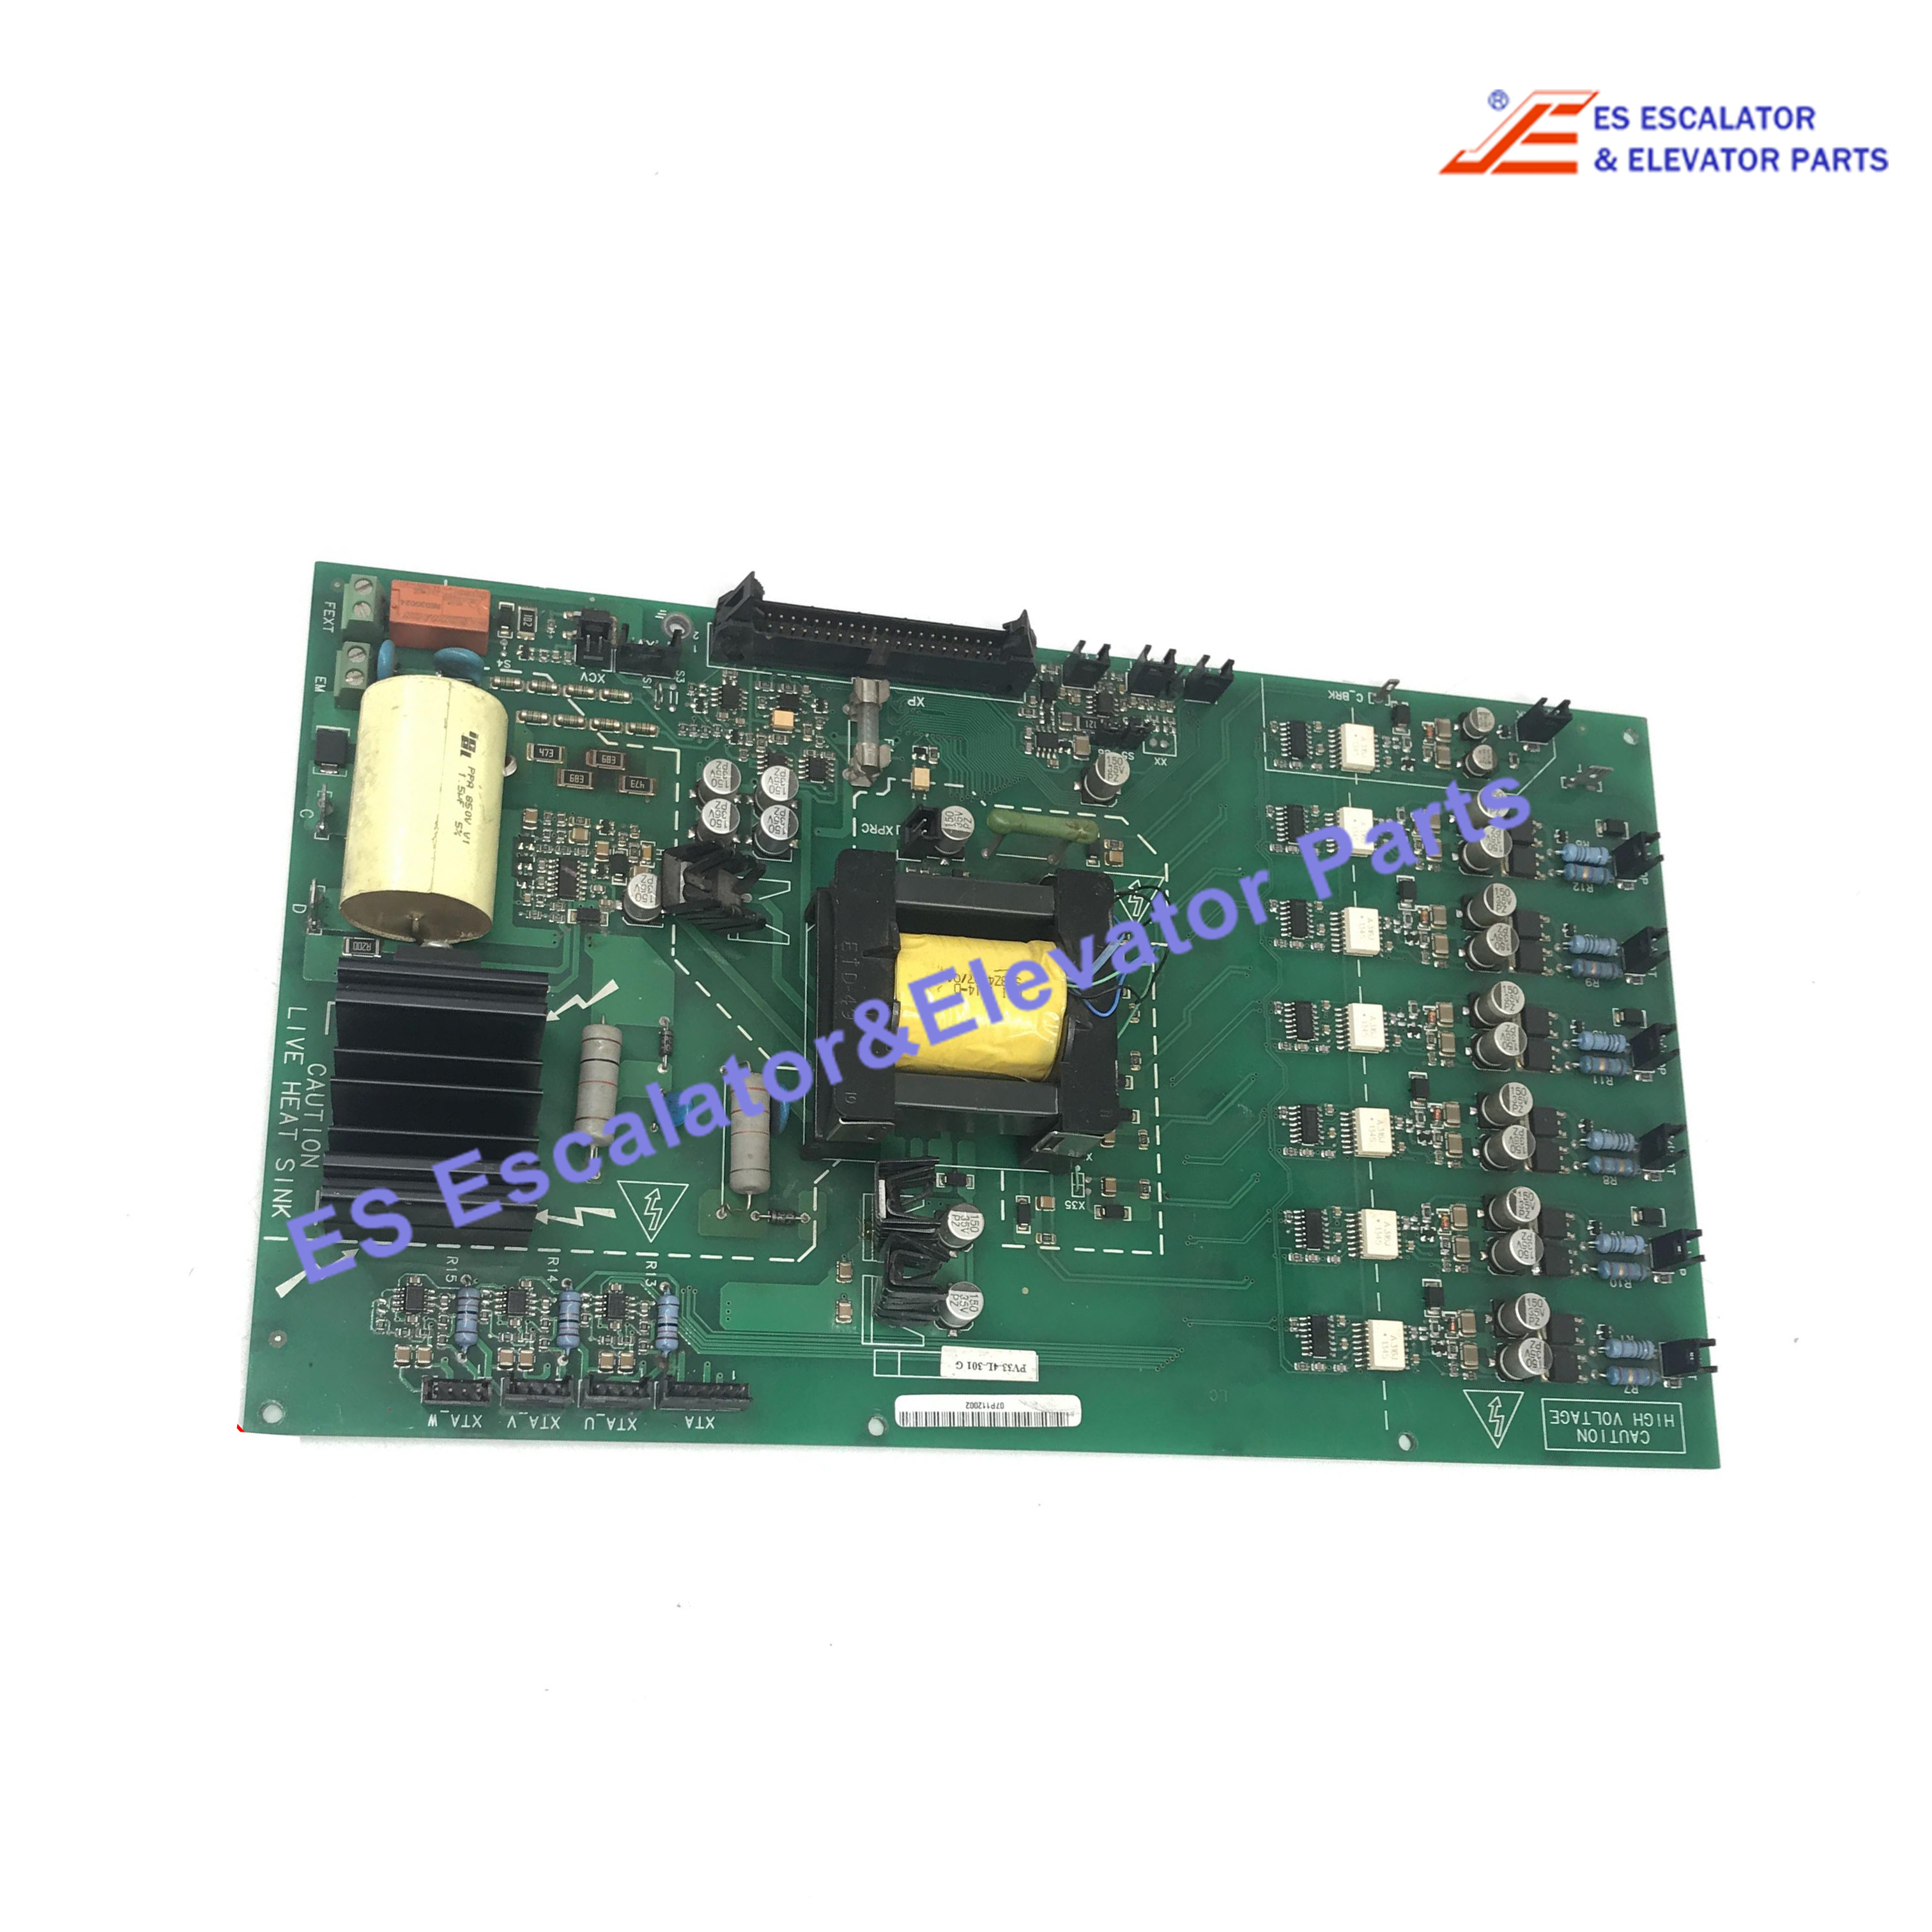 PV33-4L-301G Elevator  PCB Board  Inverter Main Board Use For Siei